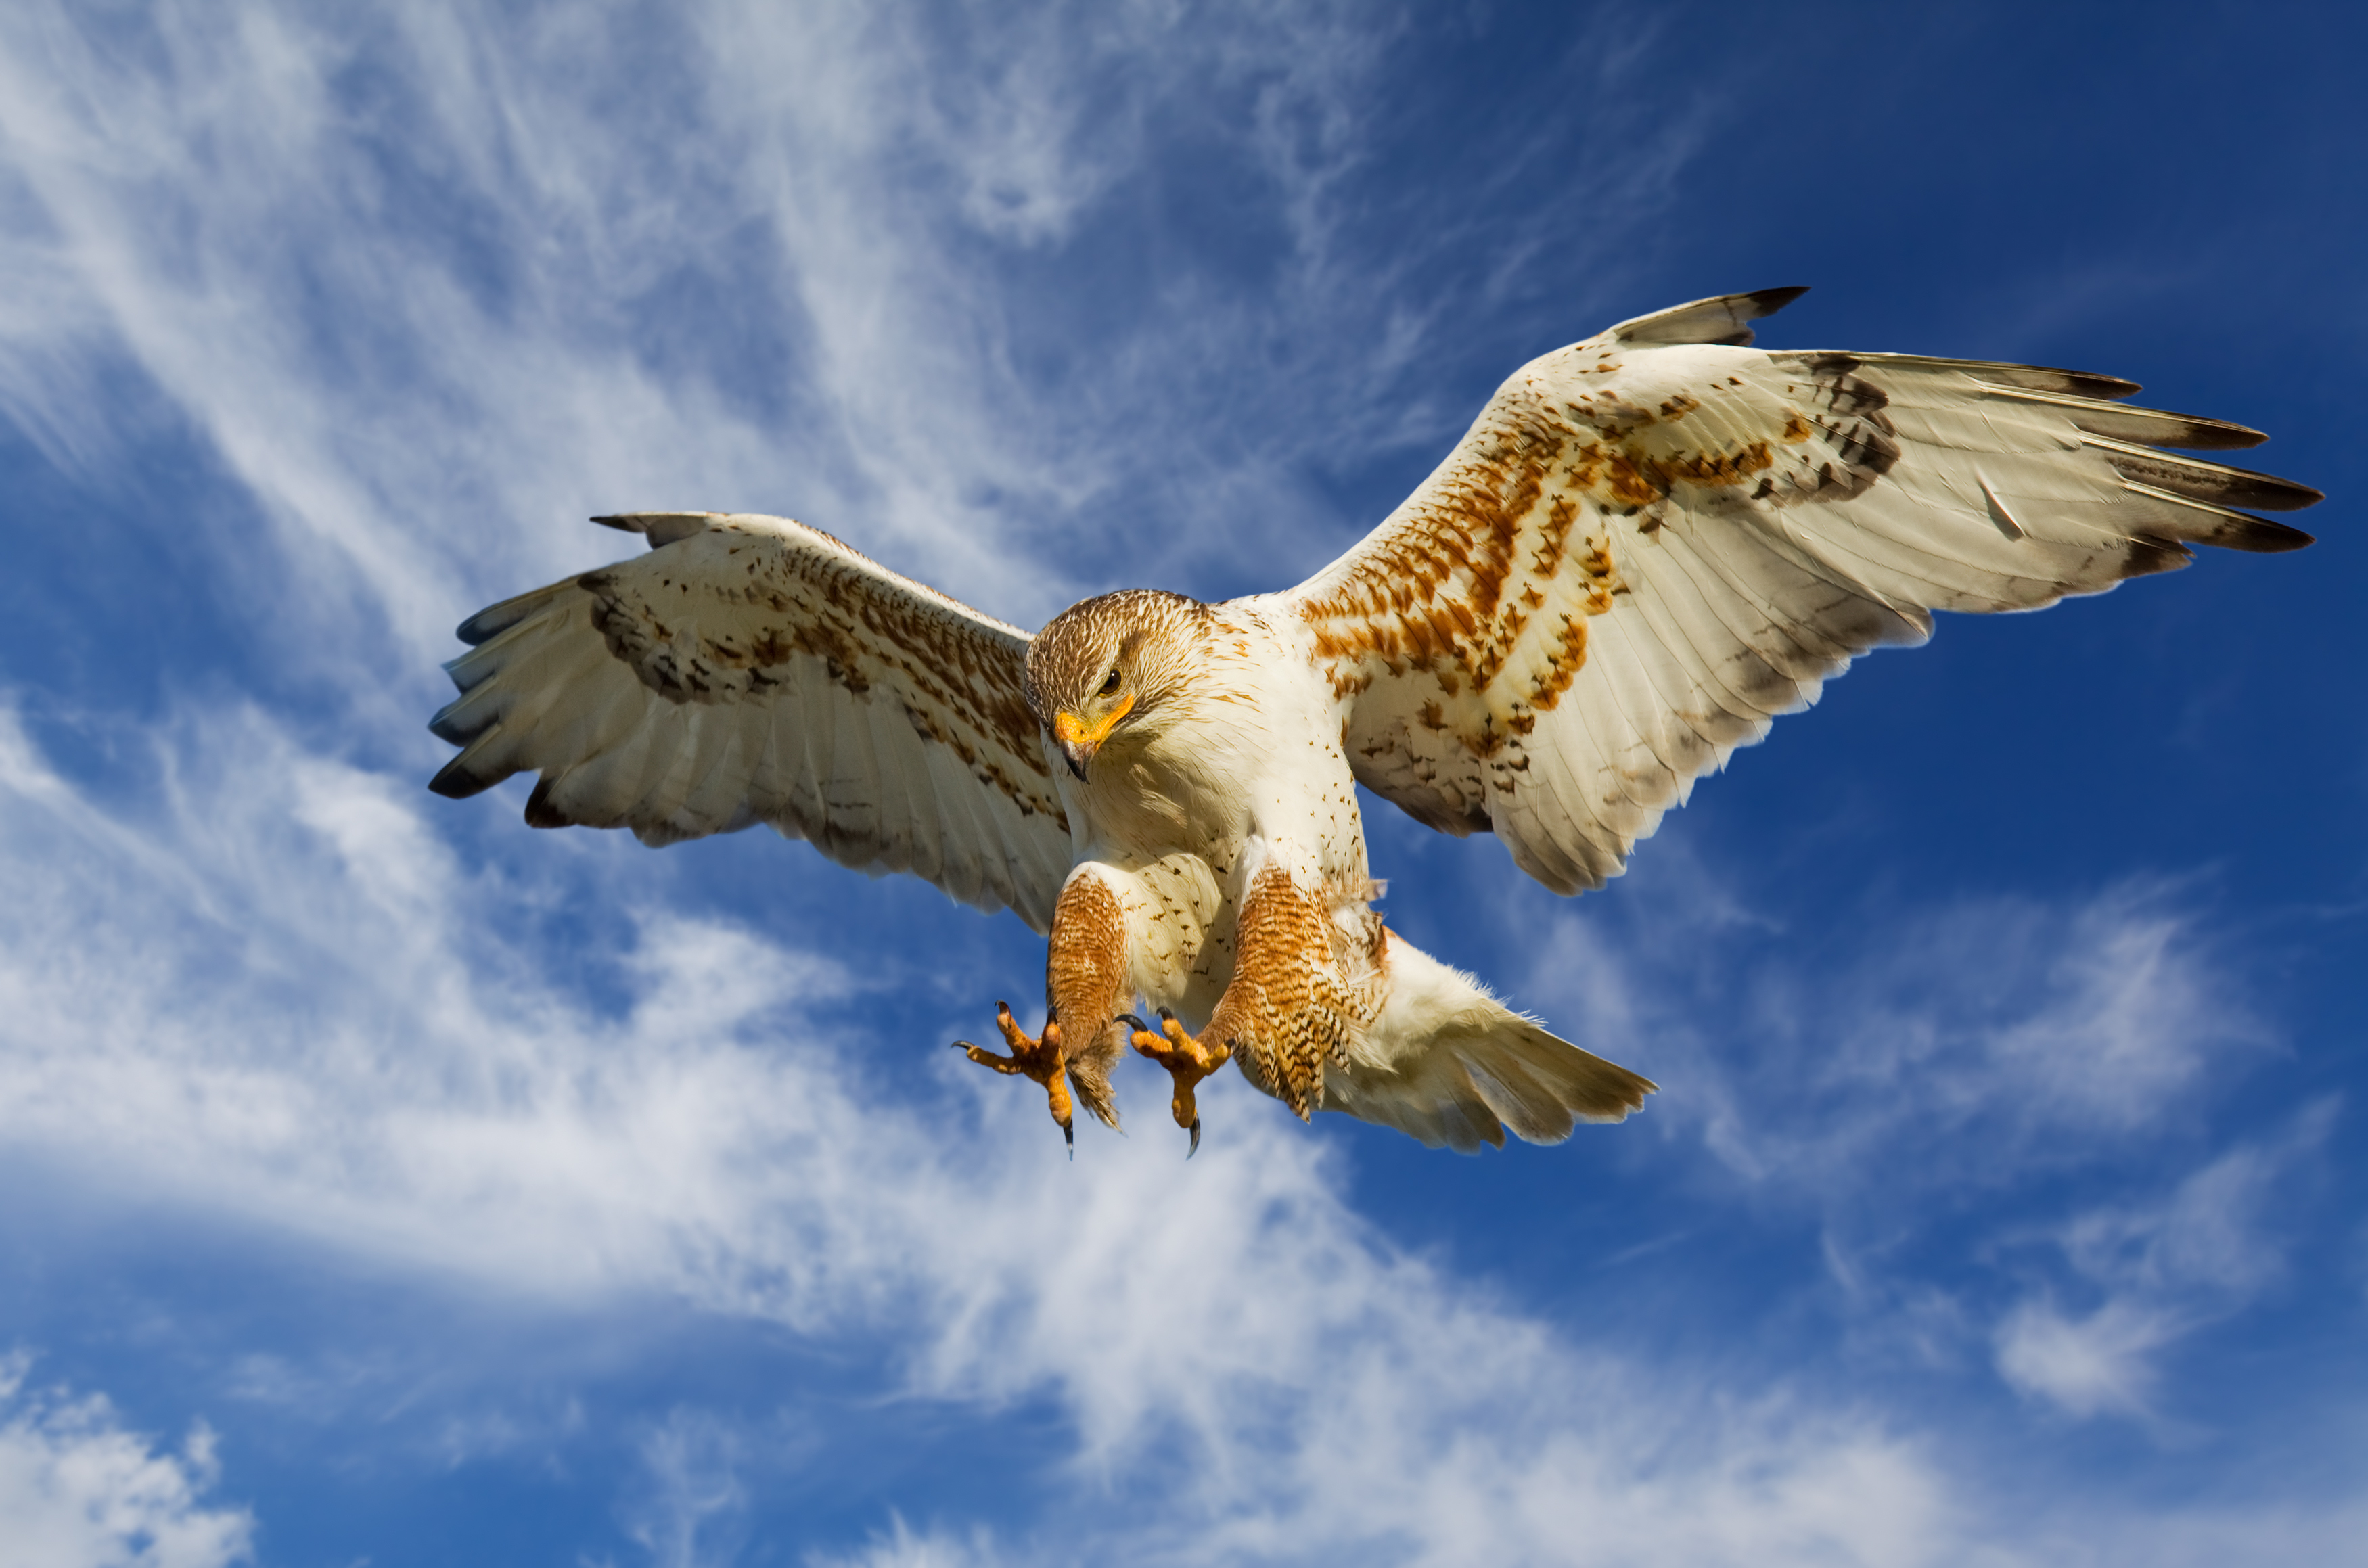 BoE rate decision reveals surprise hawk